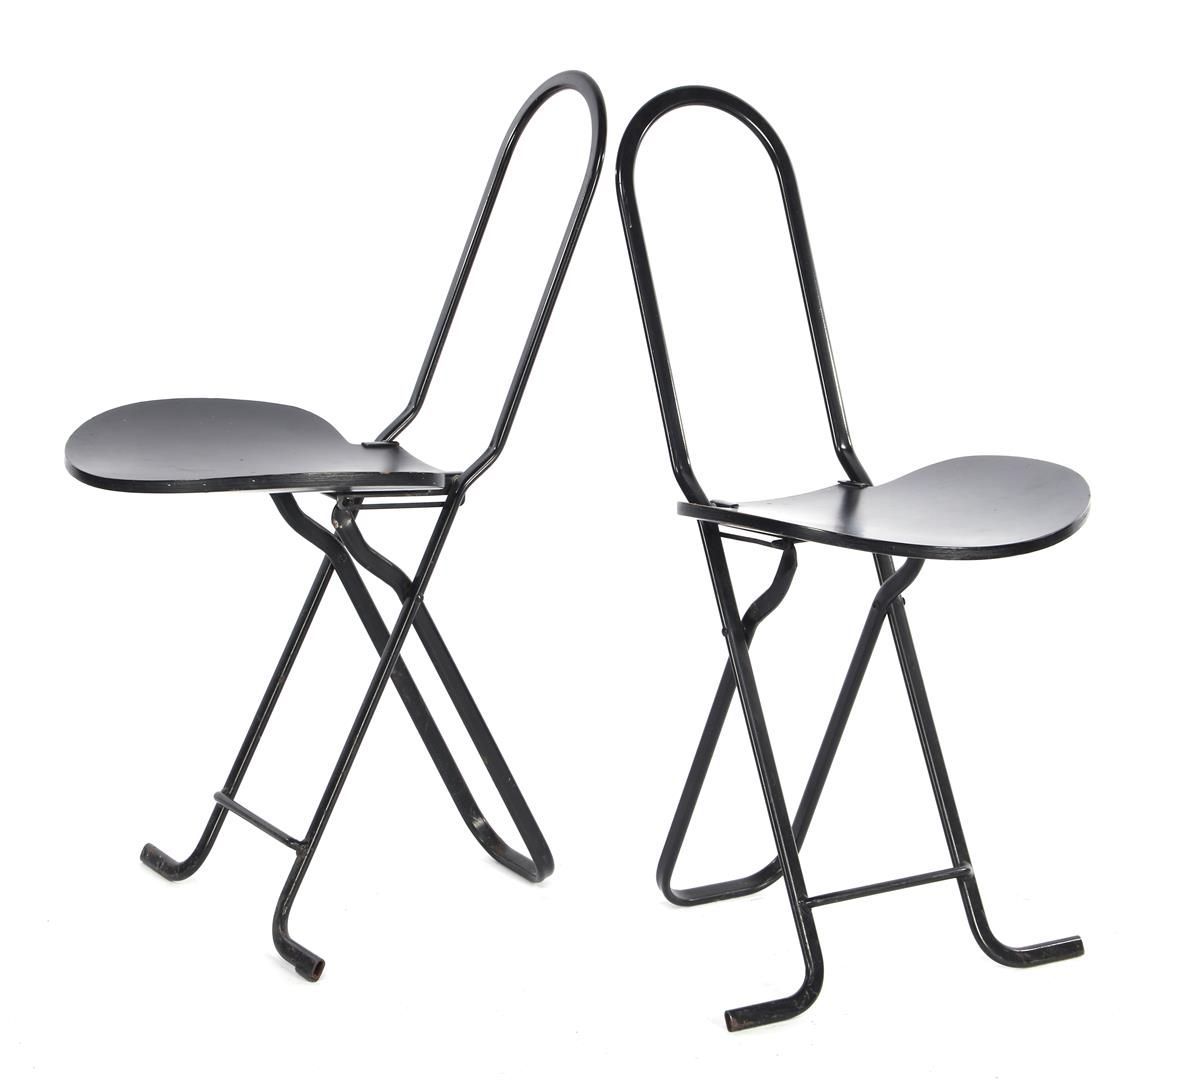 Gastone Rinaldi 加斯通-里纳尔迪（1920-2006）
2 把黑色木制折叠椅，带金属框架，加斯通-里纳尔迪主题版设计，型号 "Dafne"，意大&hellip;